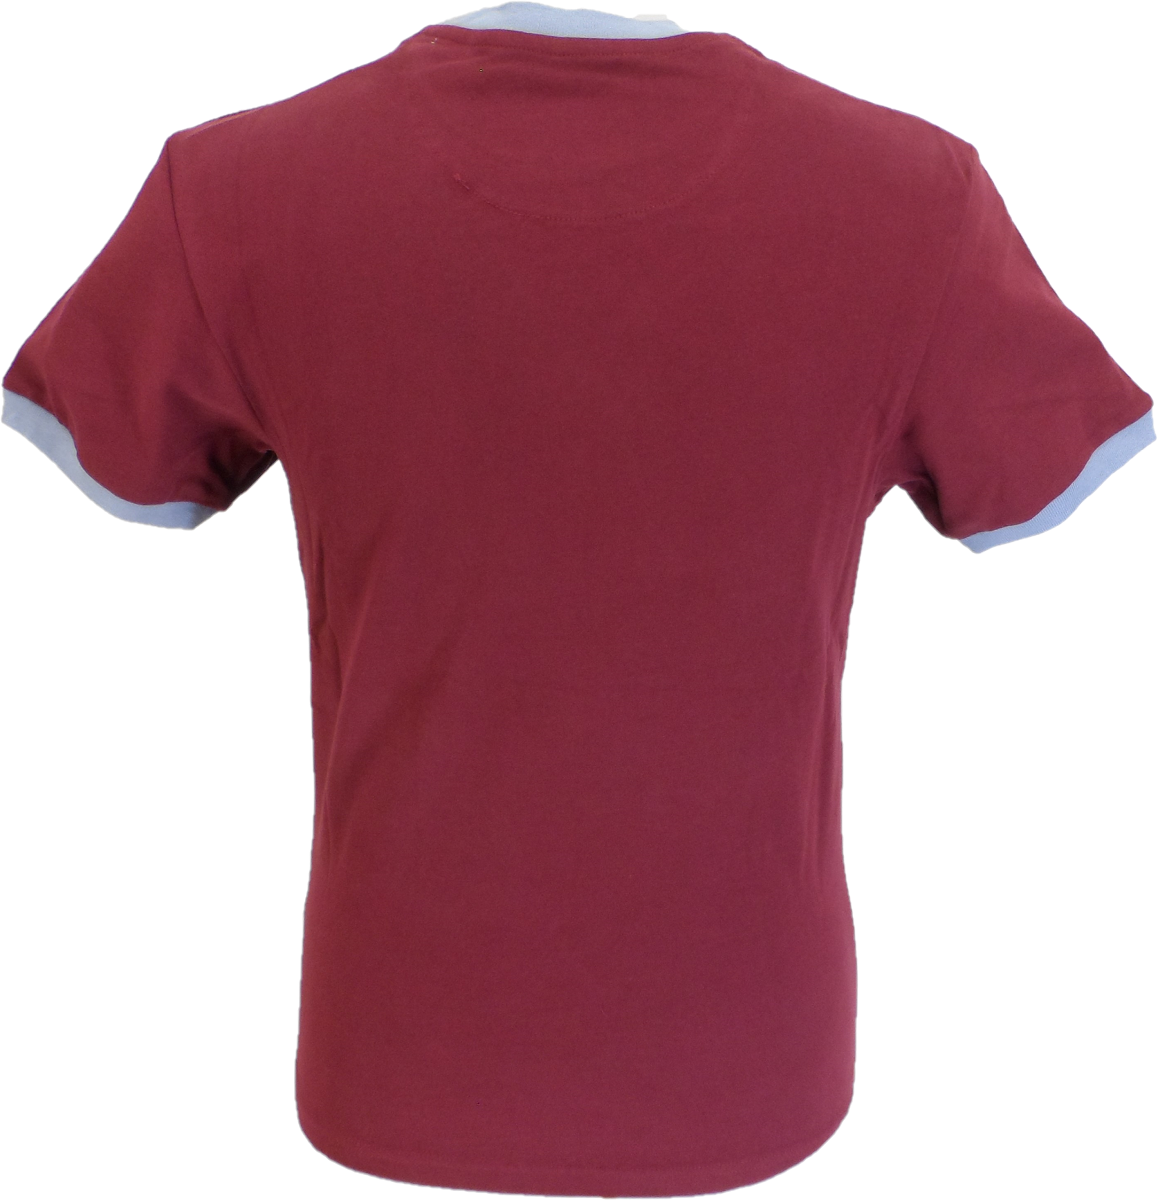 Trojan records port rouge casque classique logo 100% coton t-shirt